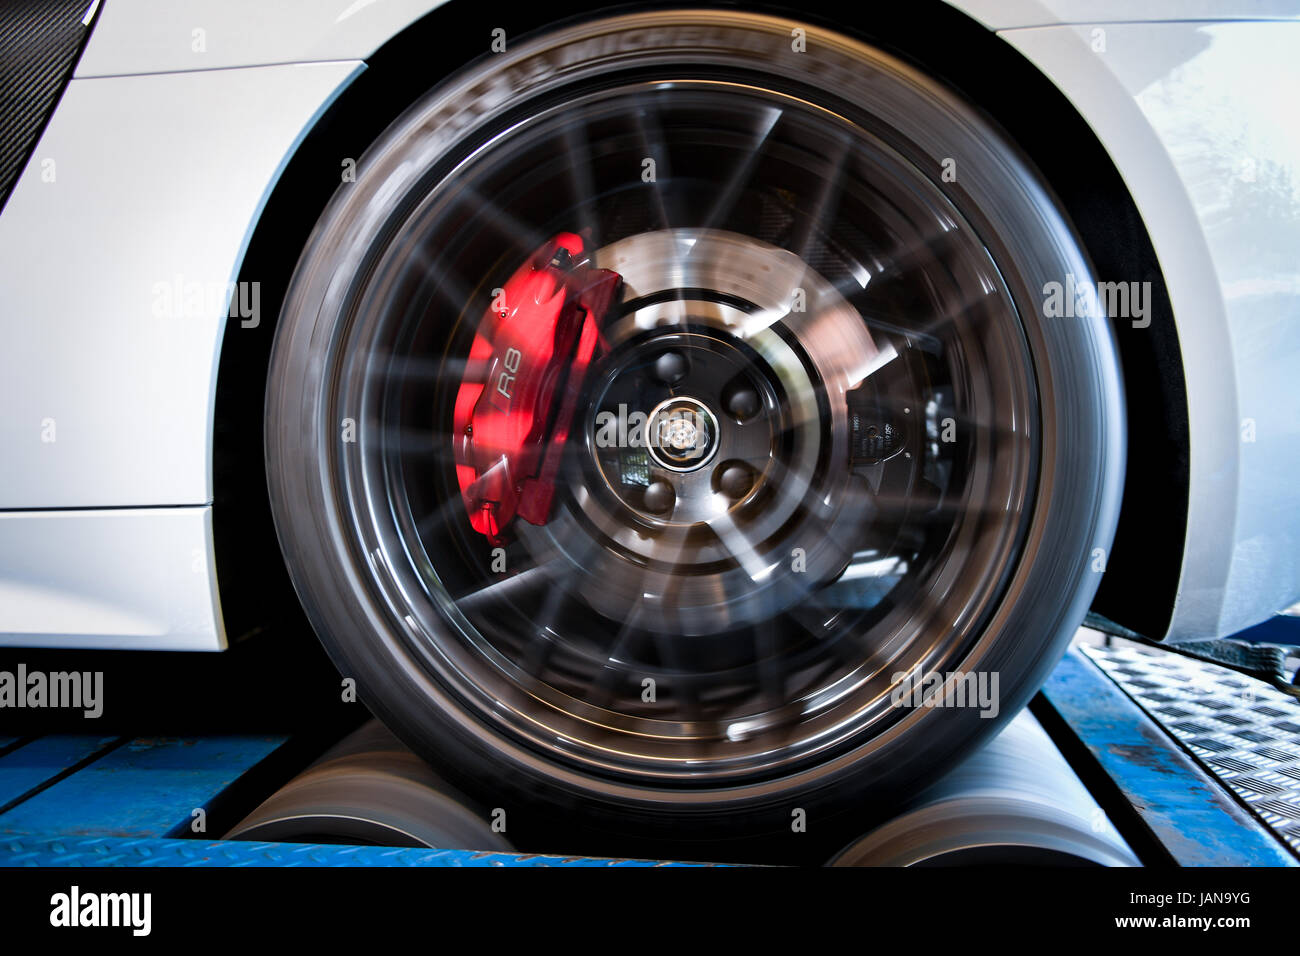 Audi R8 in der Nähe von Rad- und Keramik Bremsen Stockfotografie - Alamy